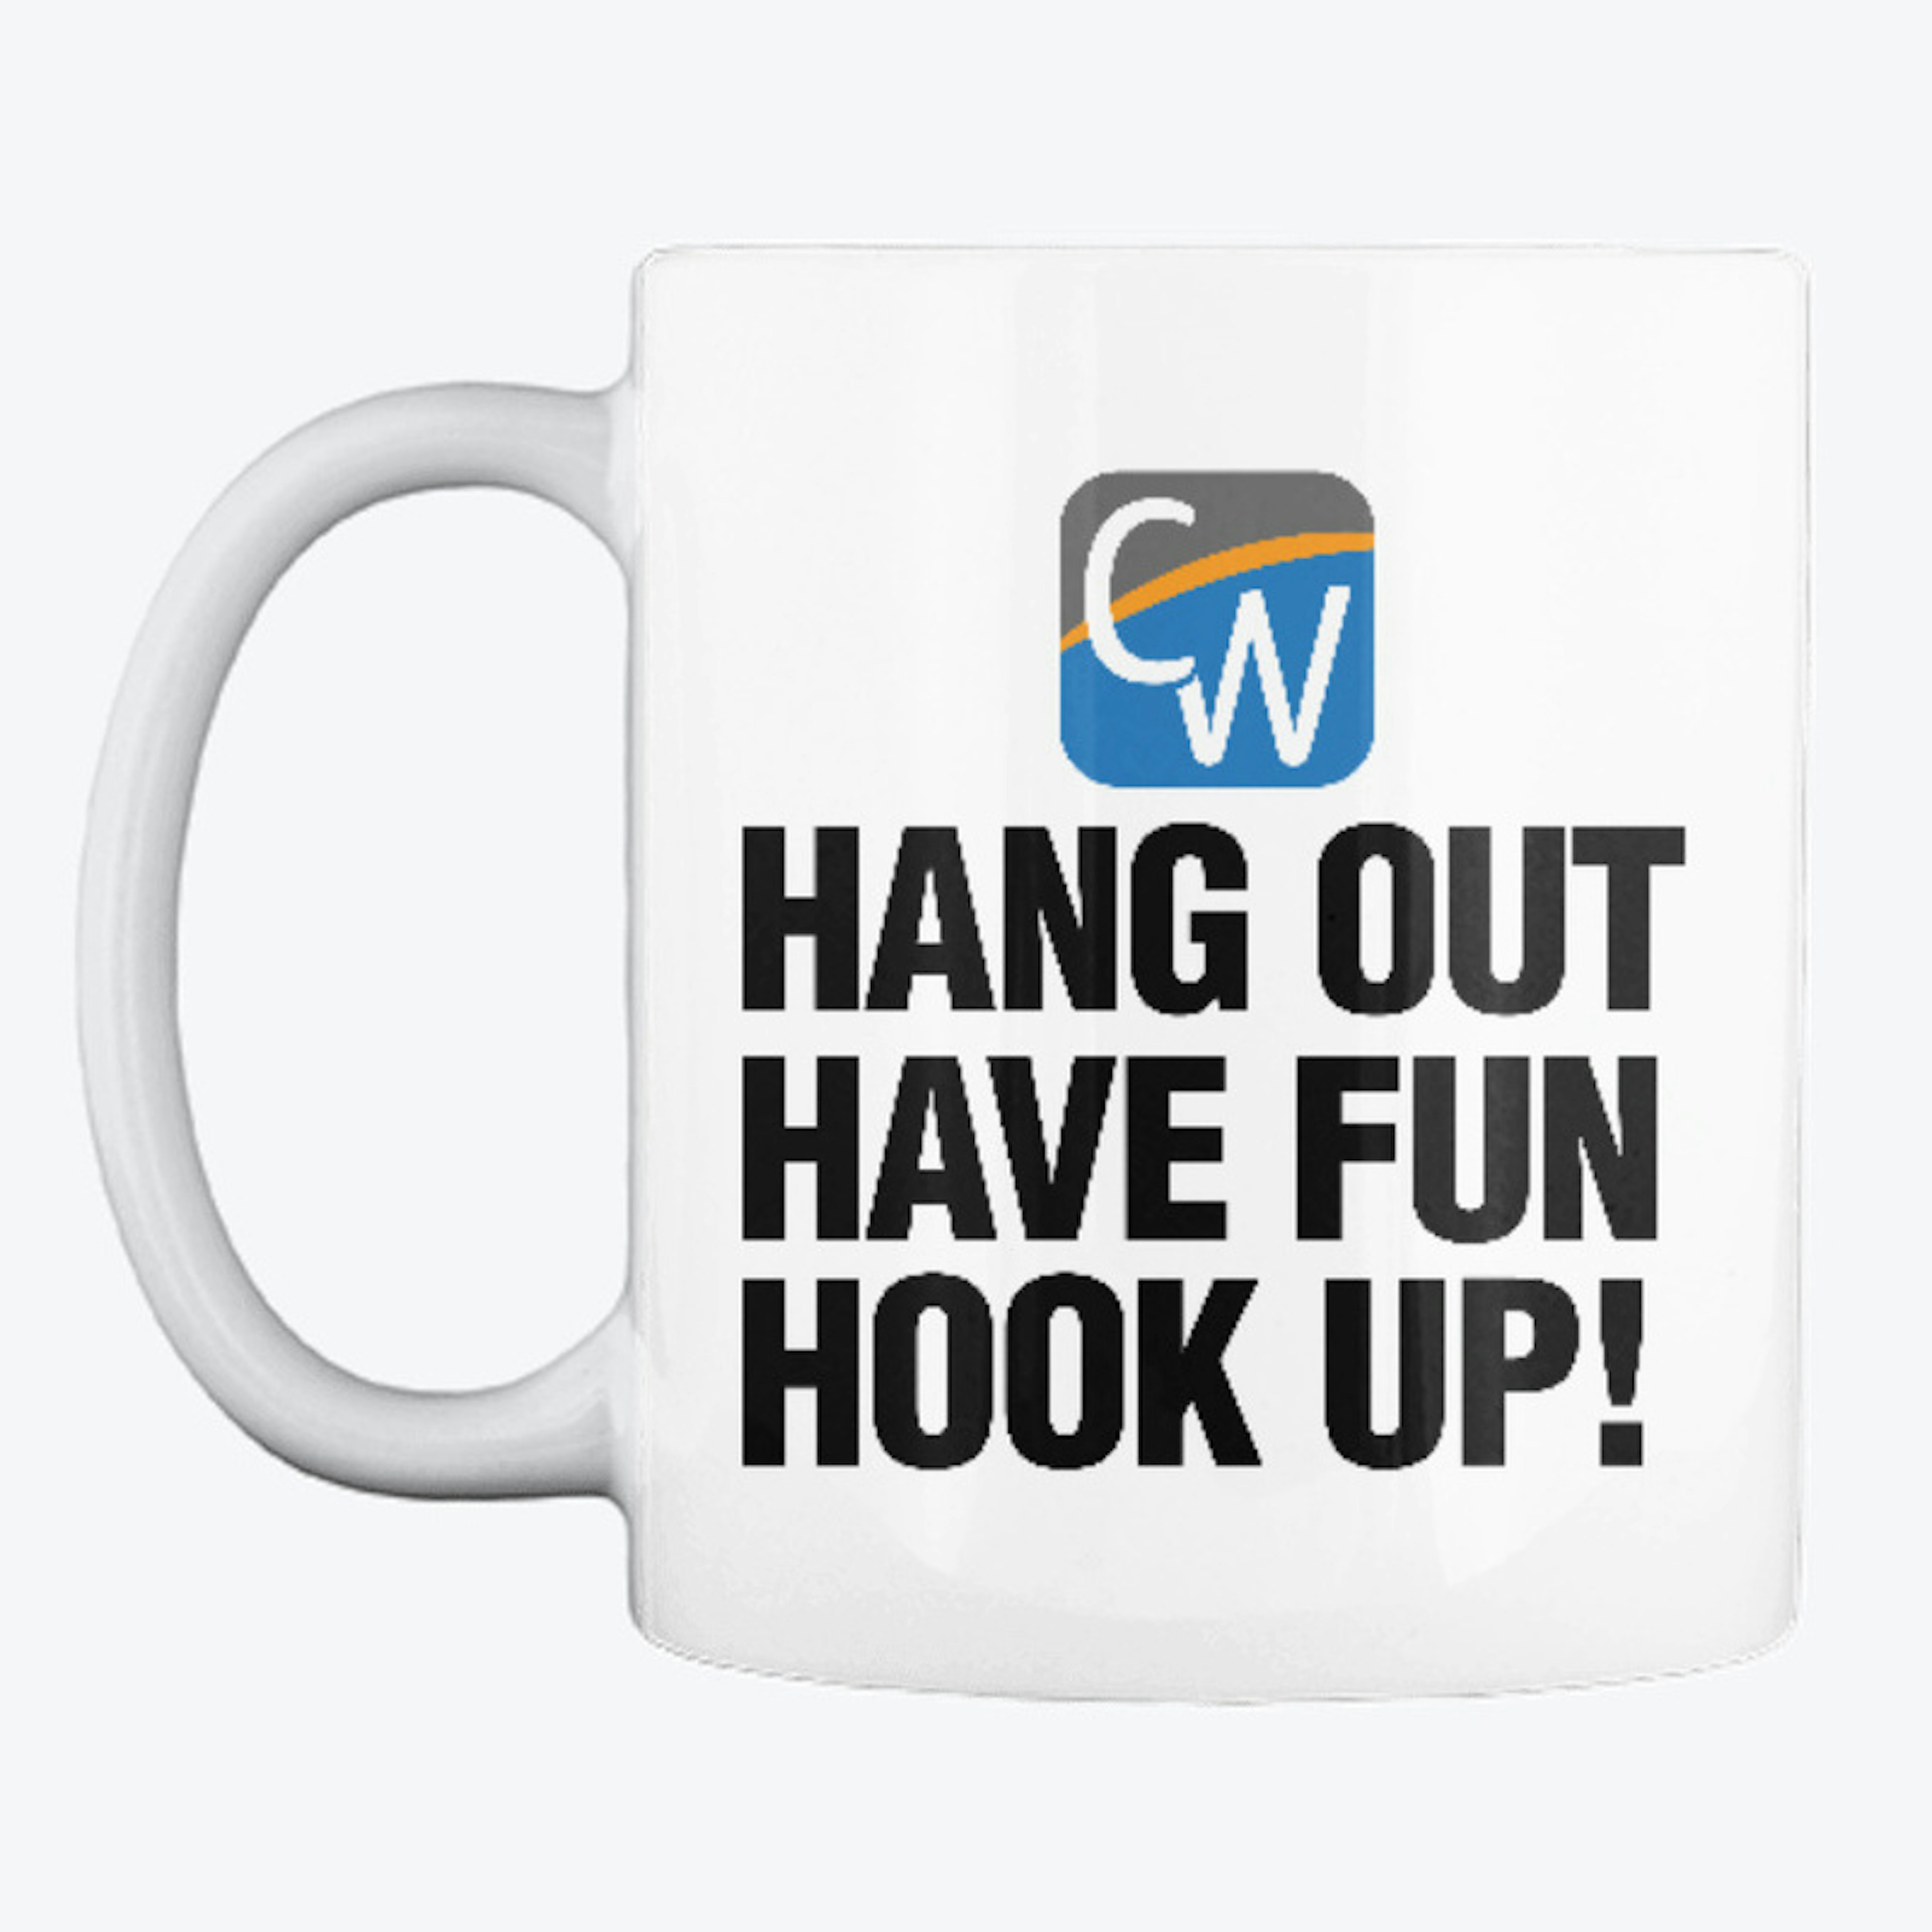 "Hang Out Have Fun Hook Up!" Logo Mug